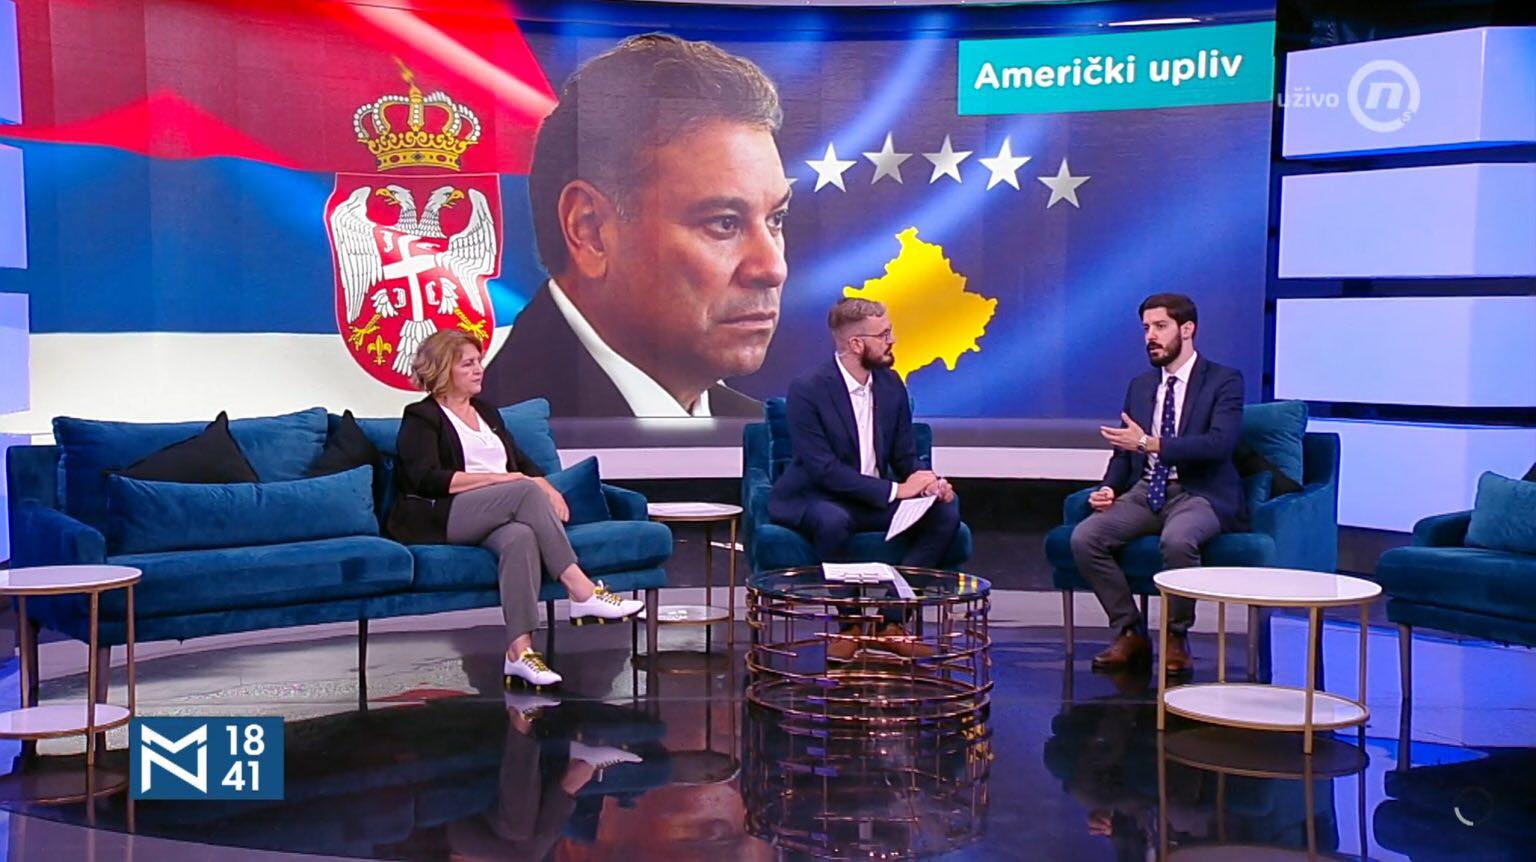 Flamuri i Kosovës shfaqet në një media të Beogradit, analistët serbë: Normalizimi i marrëdhënieve, për amerikanët është njohje e Kosovës nga Serbia